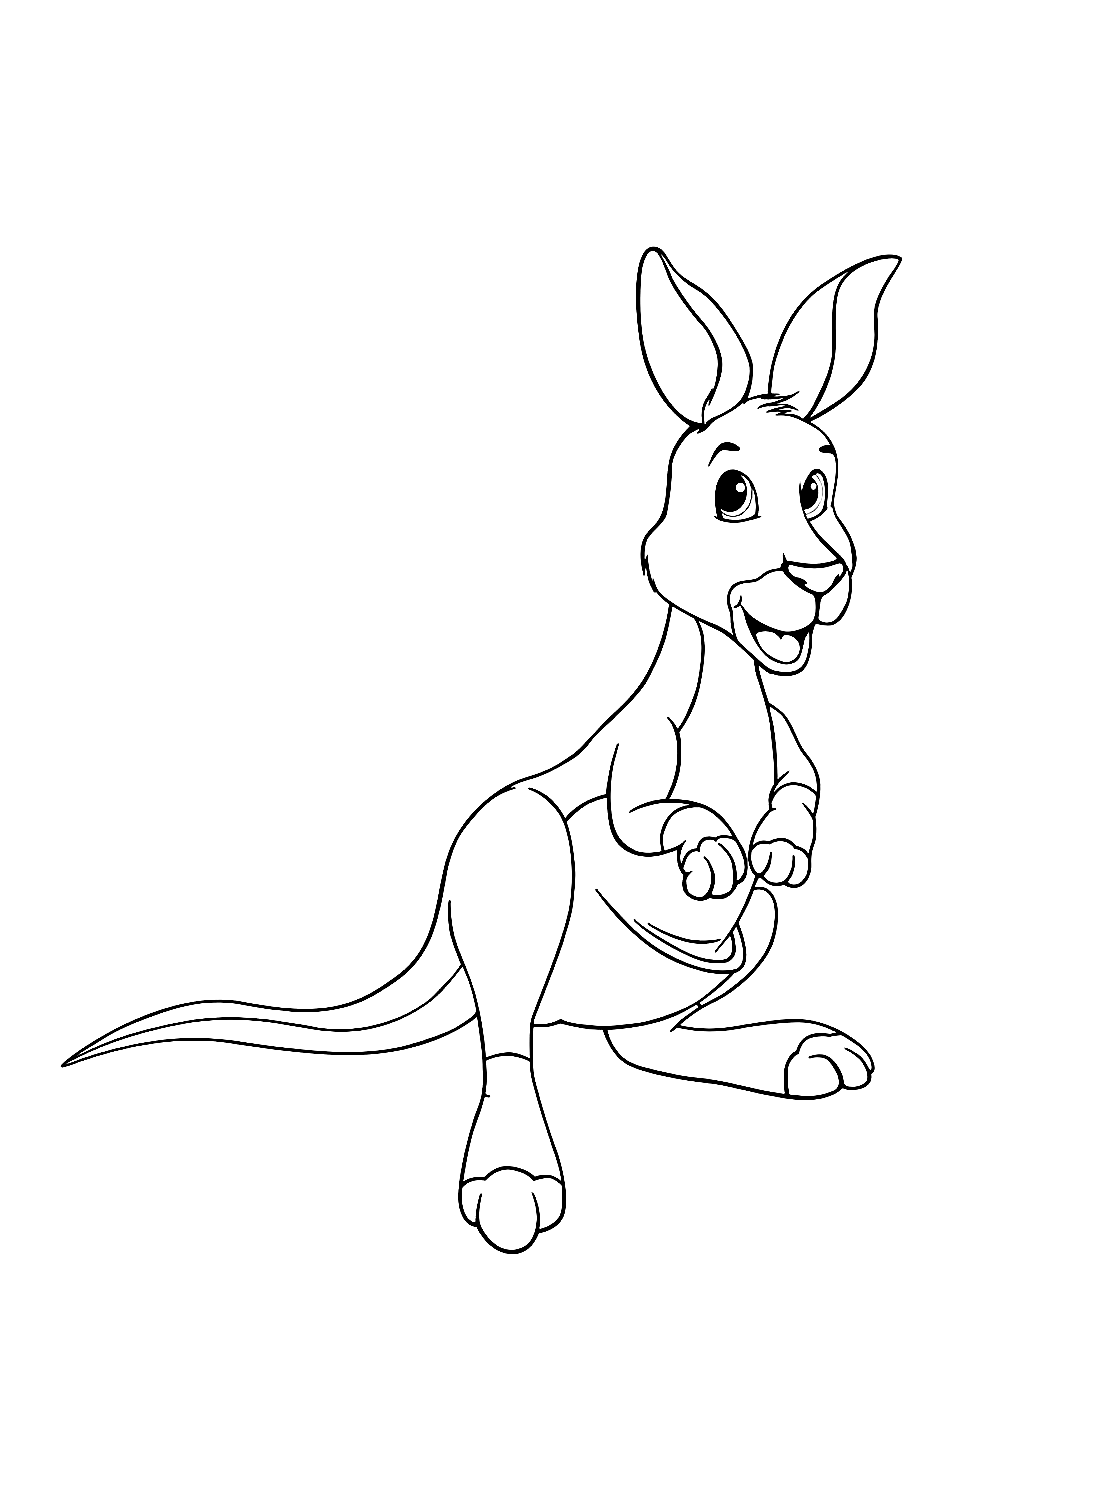 Easy Cute Kangaroo from Kangaroo